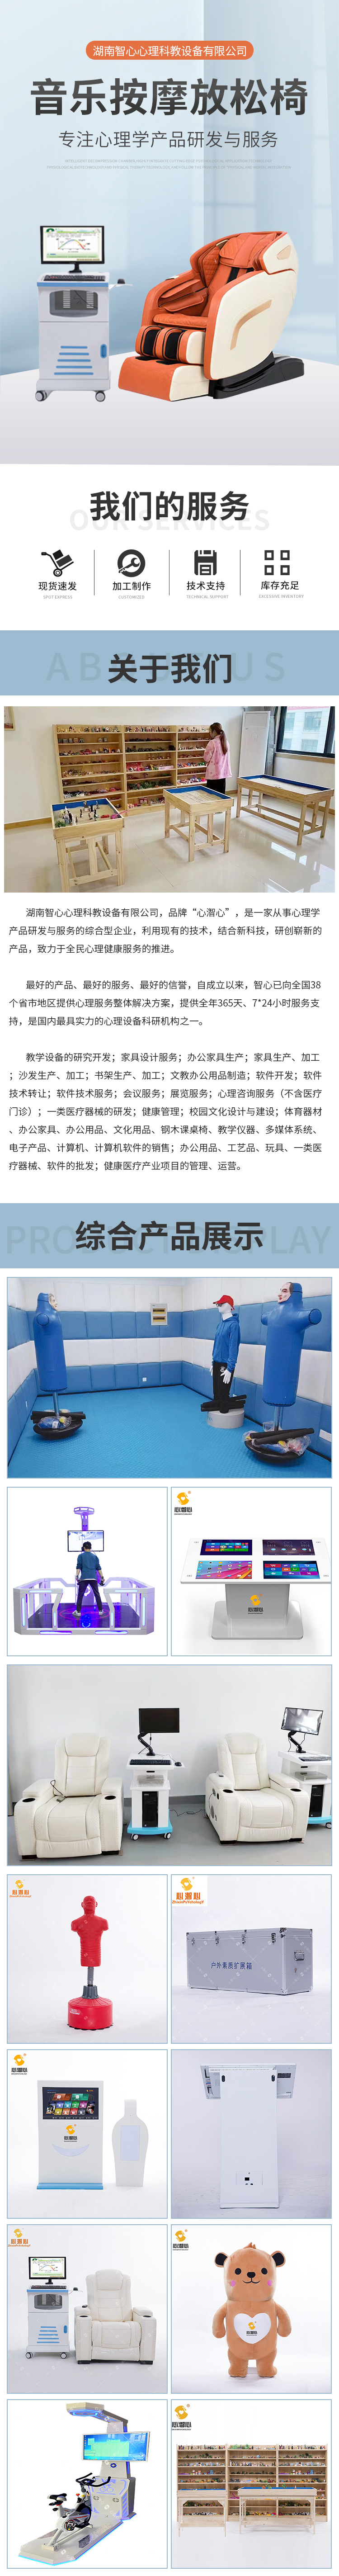 广西VR虚拟减压系统